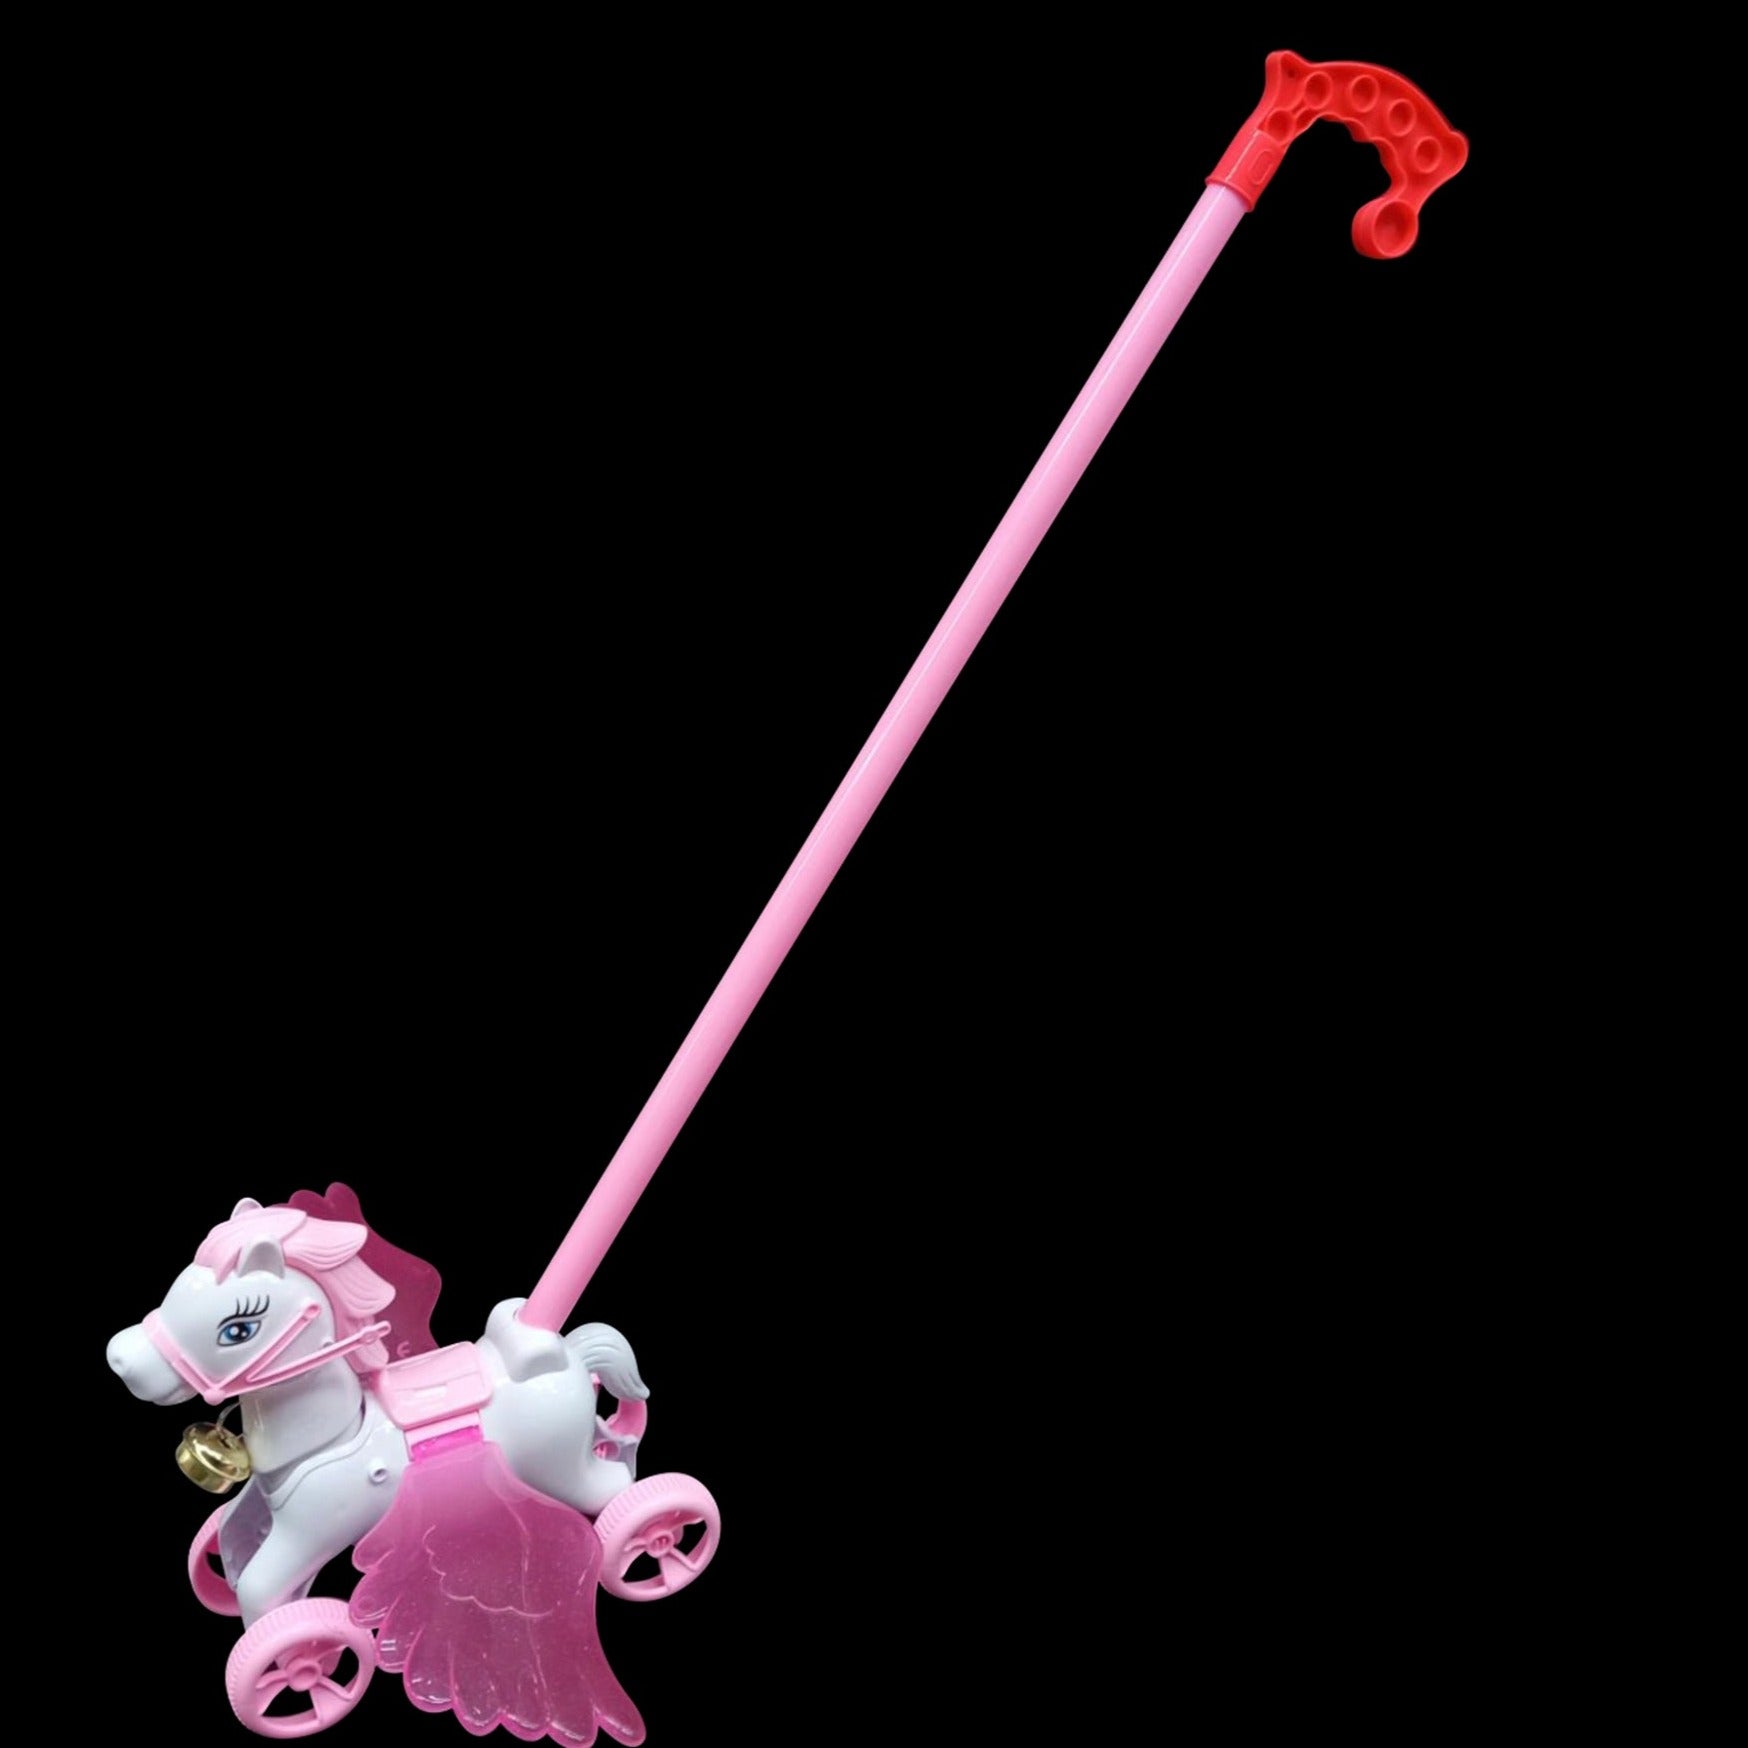 Push toy unicorn